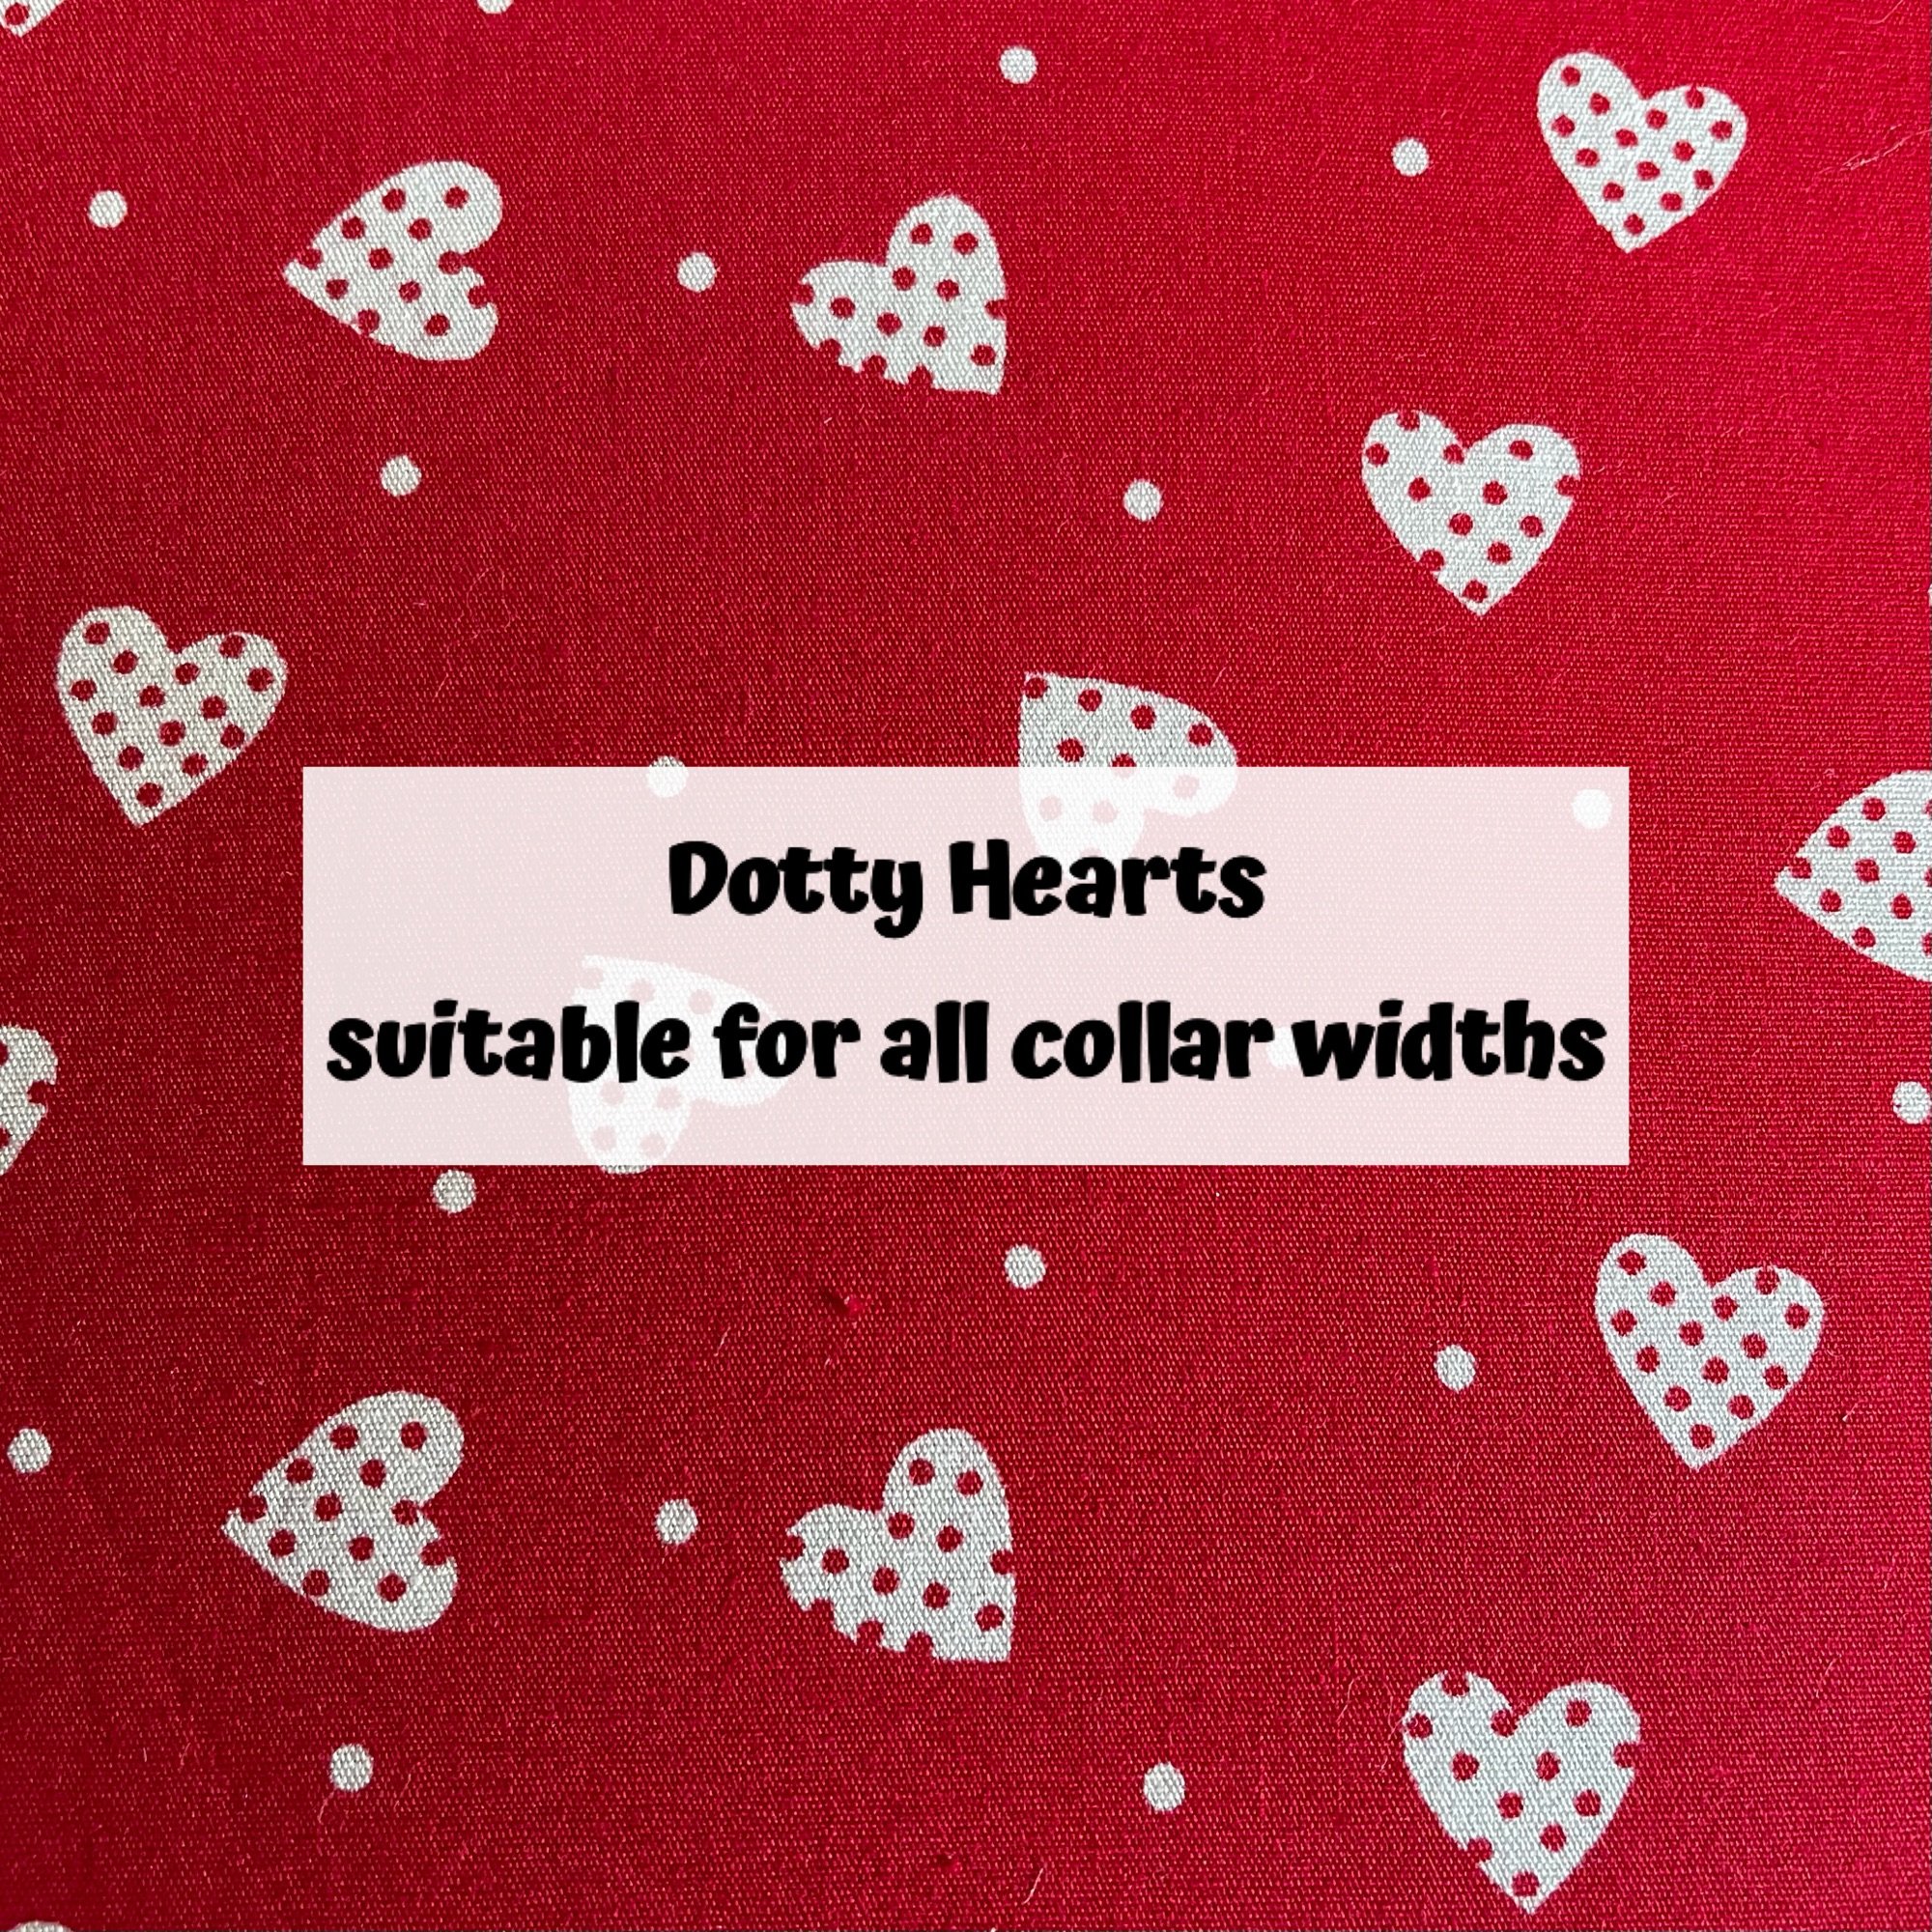 Dotty Hearts